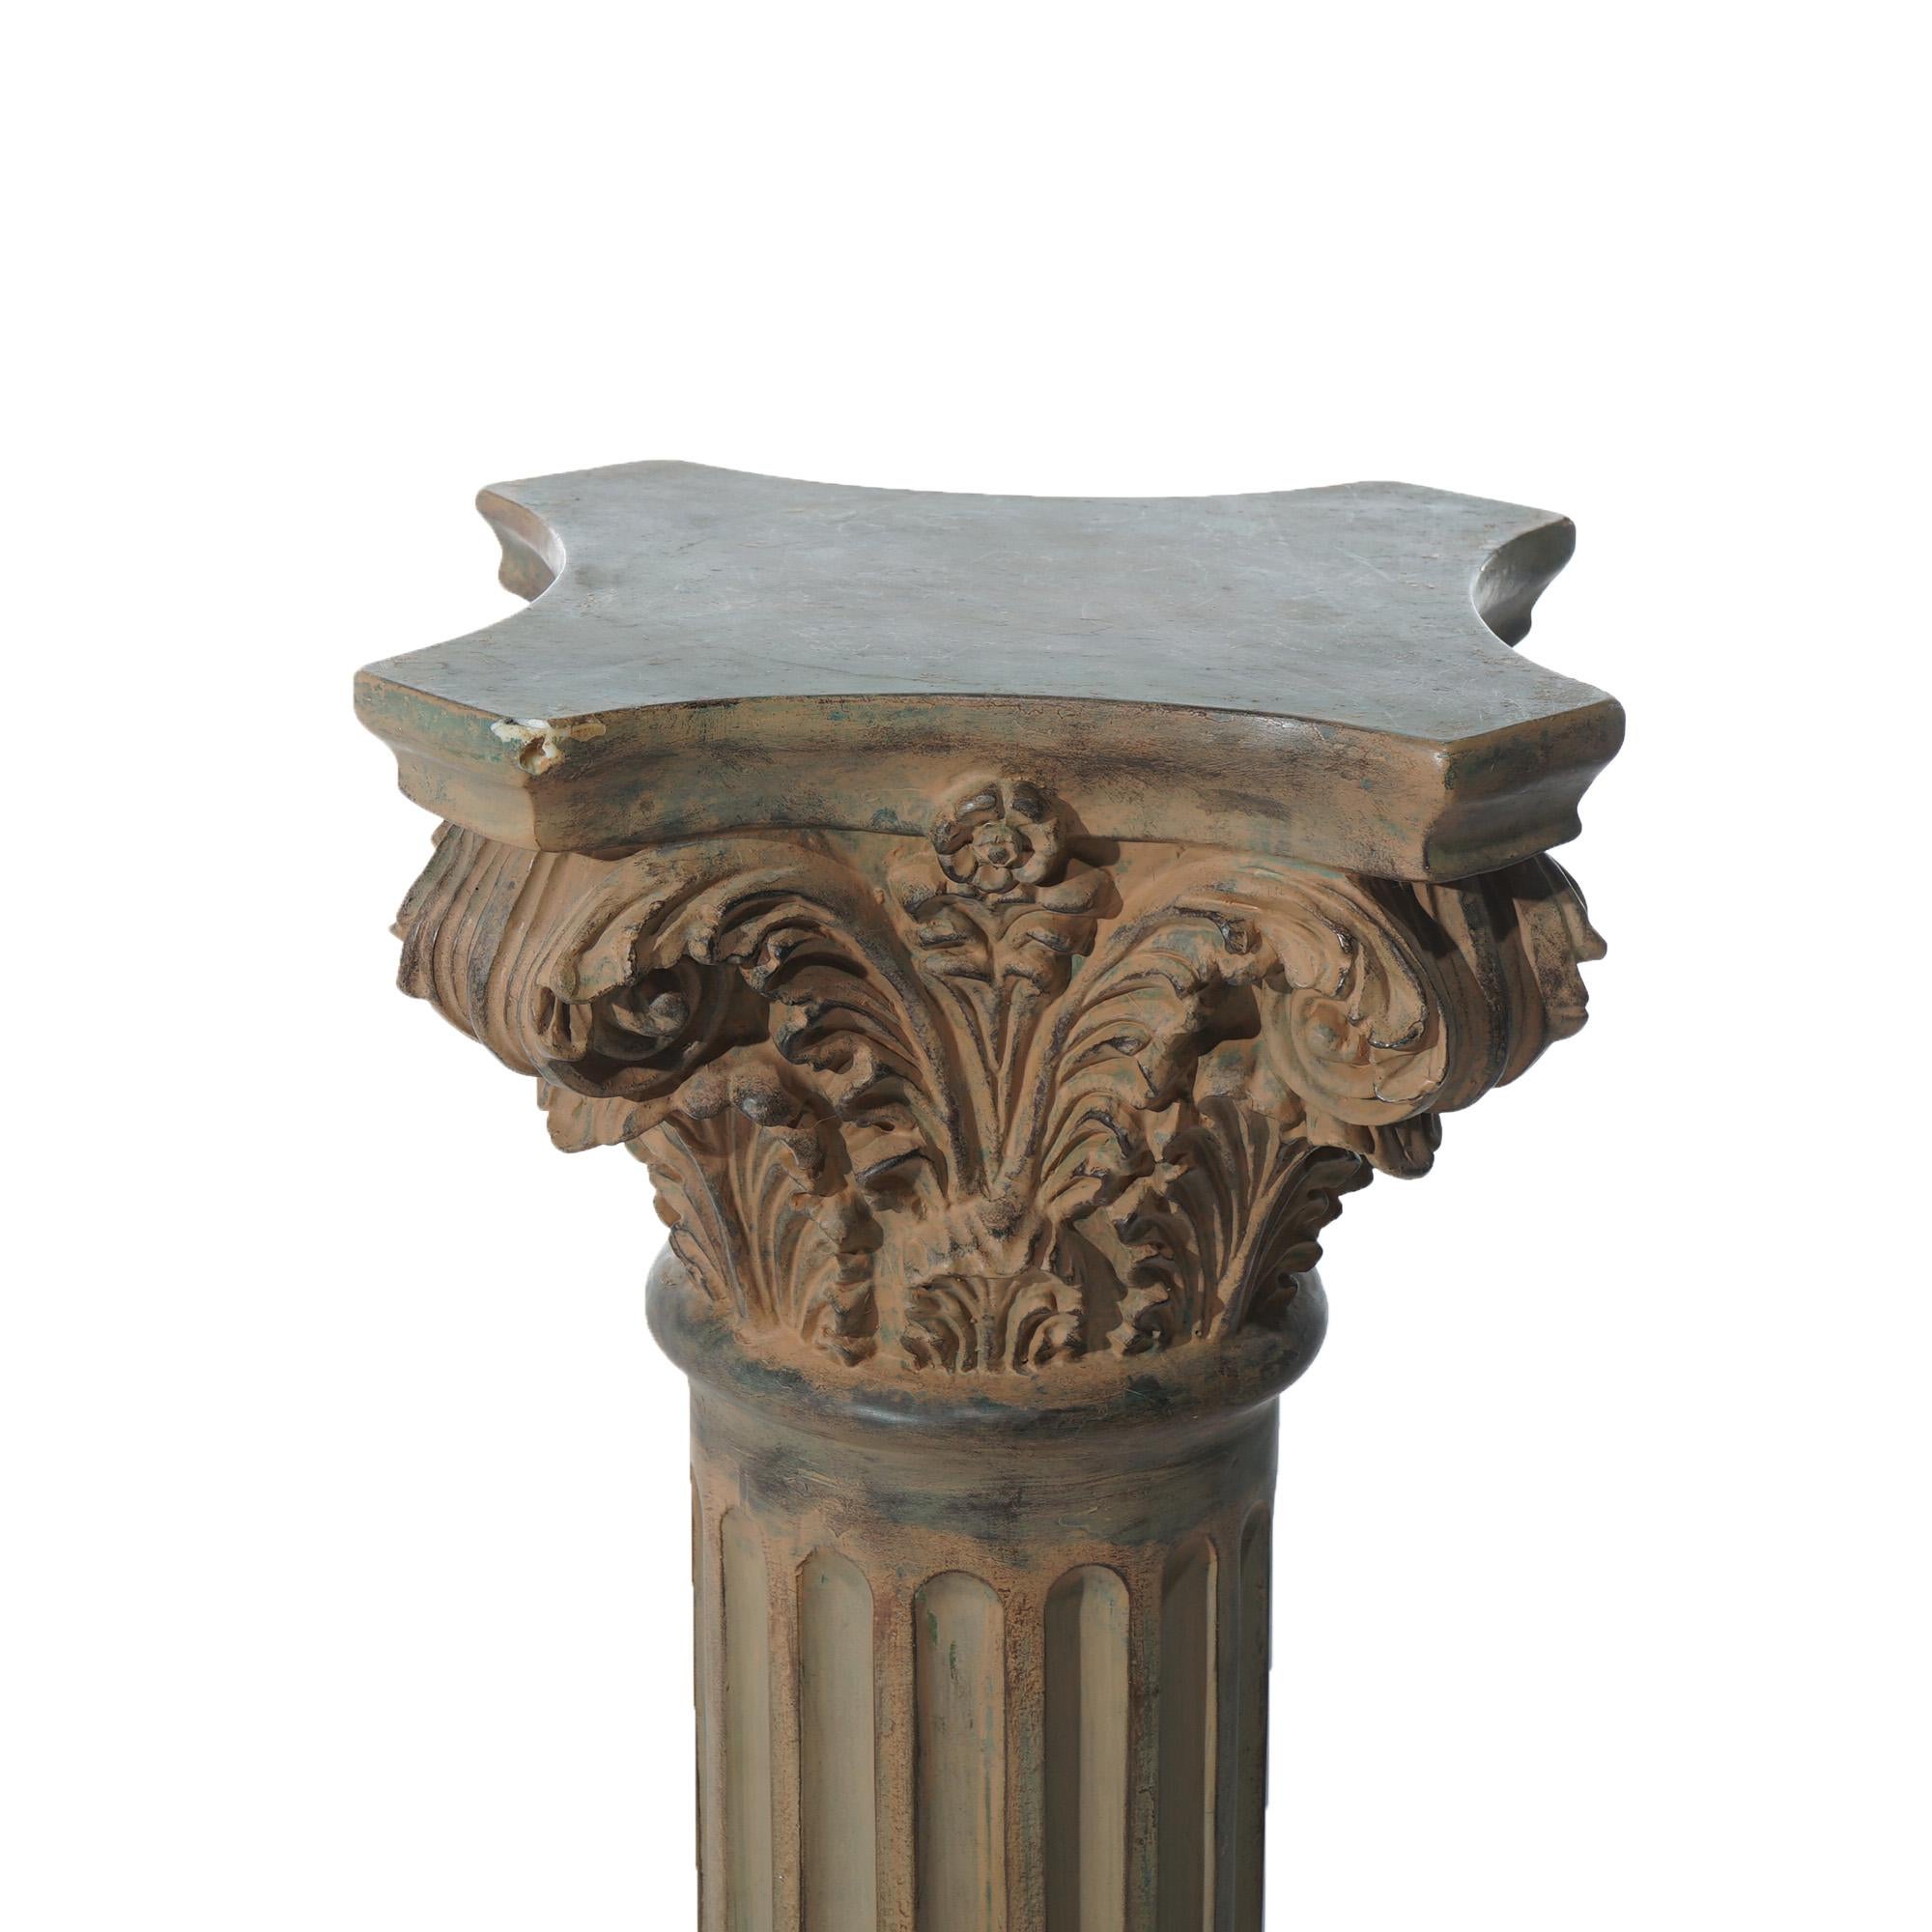 Pair Neoclassical Corinthian Column Form Composite Sculpture Pedestals 20thC For Sale 2